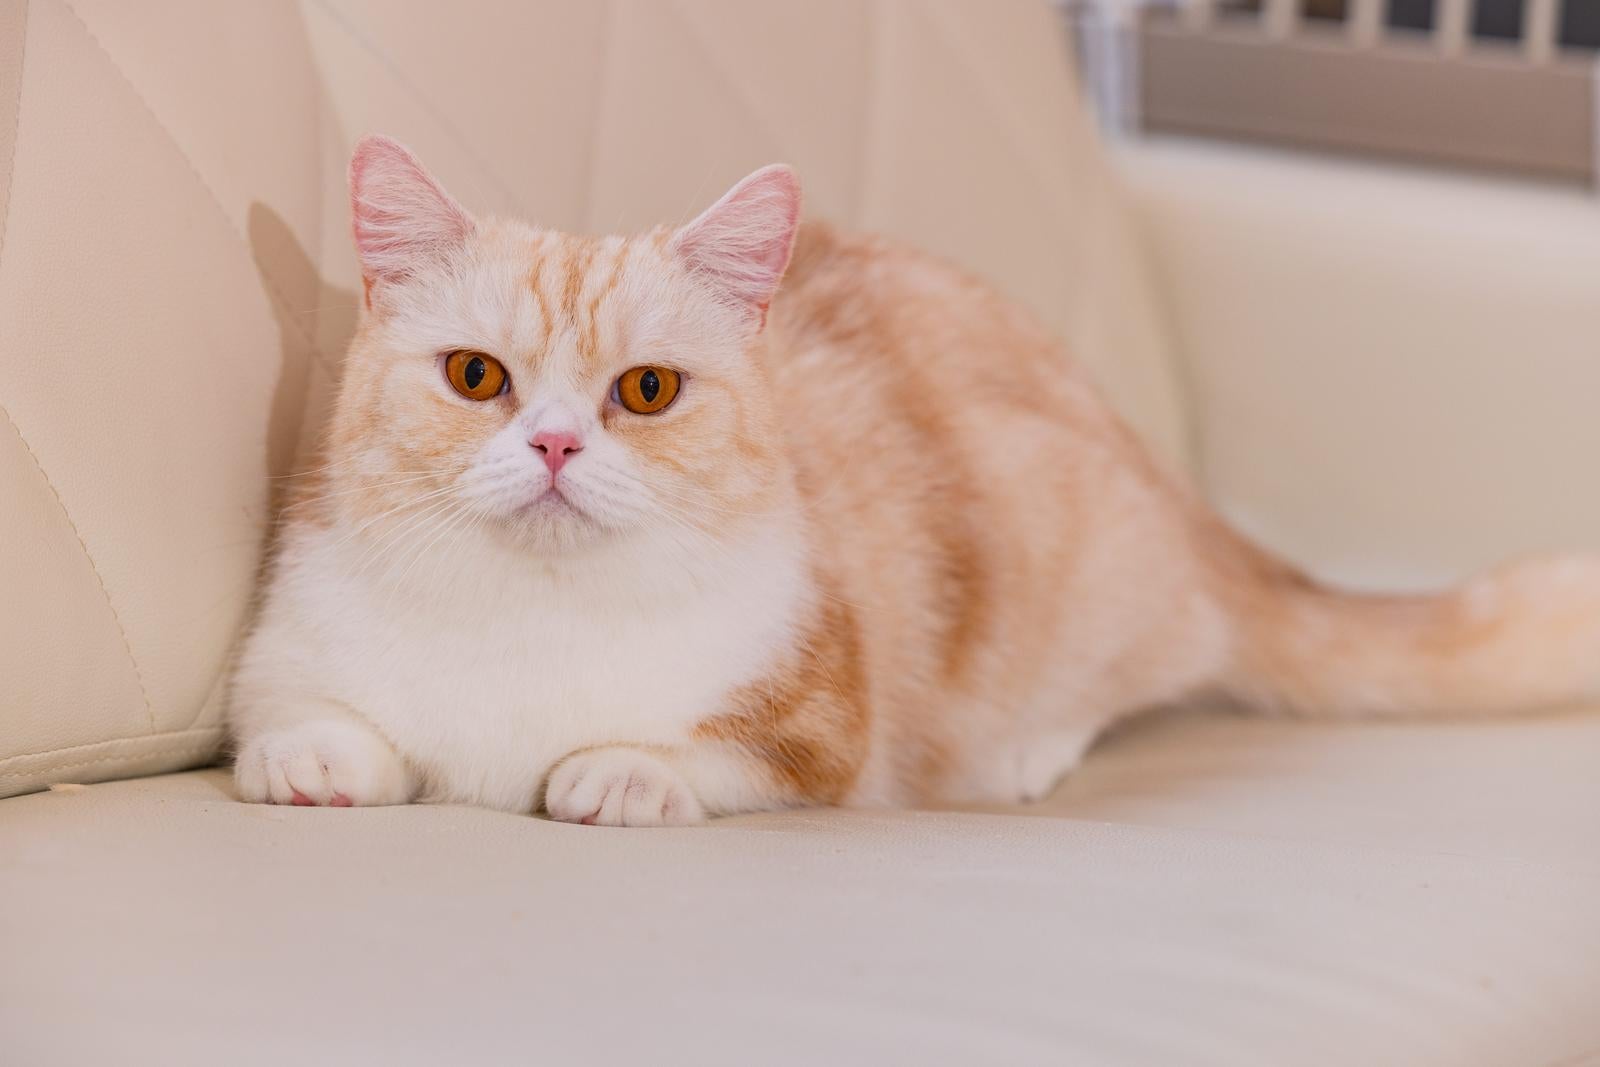 「愛嬌のある短足猫ちゃんマンチカン」の写真